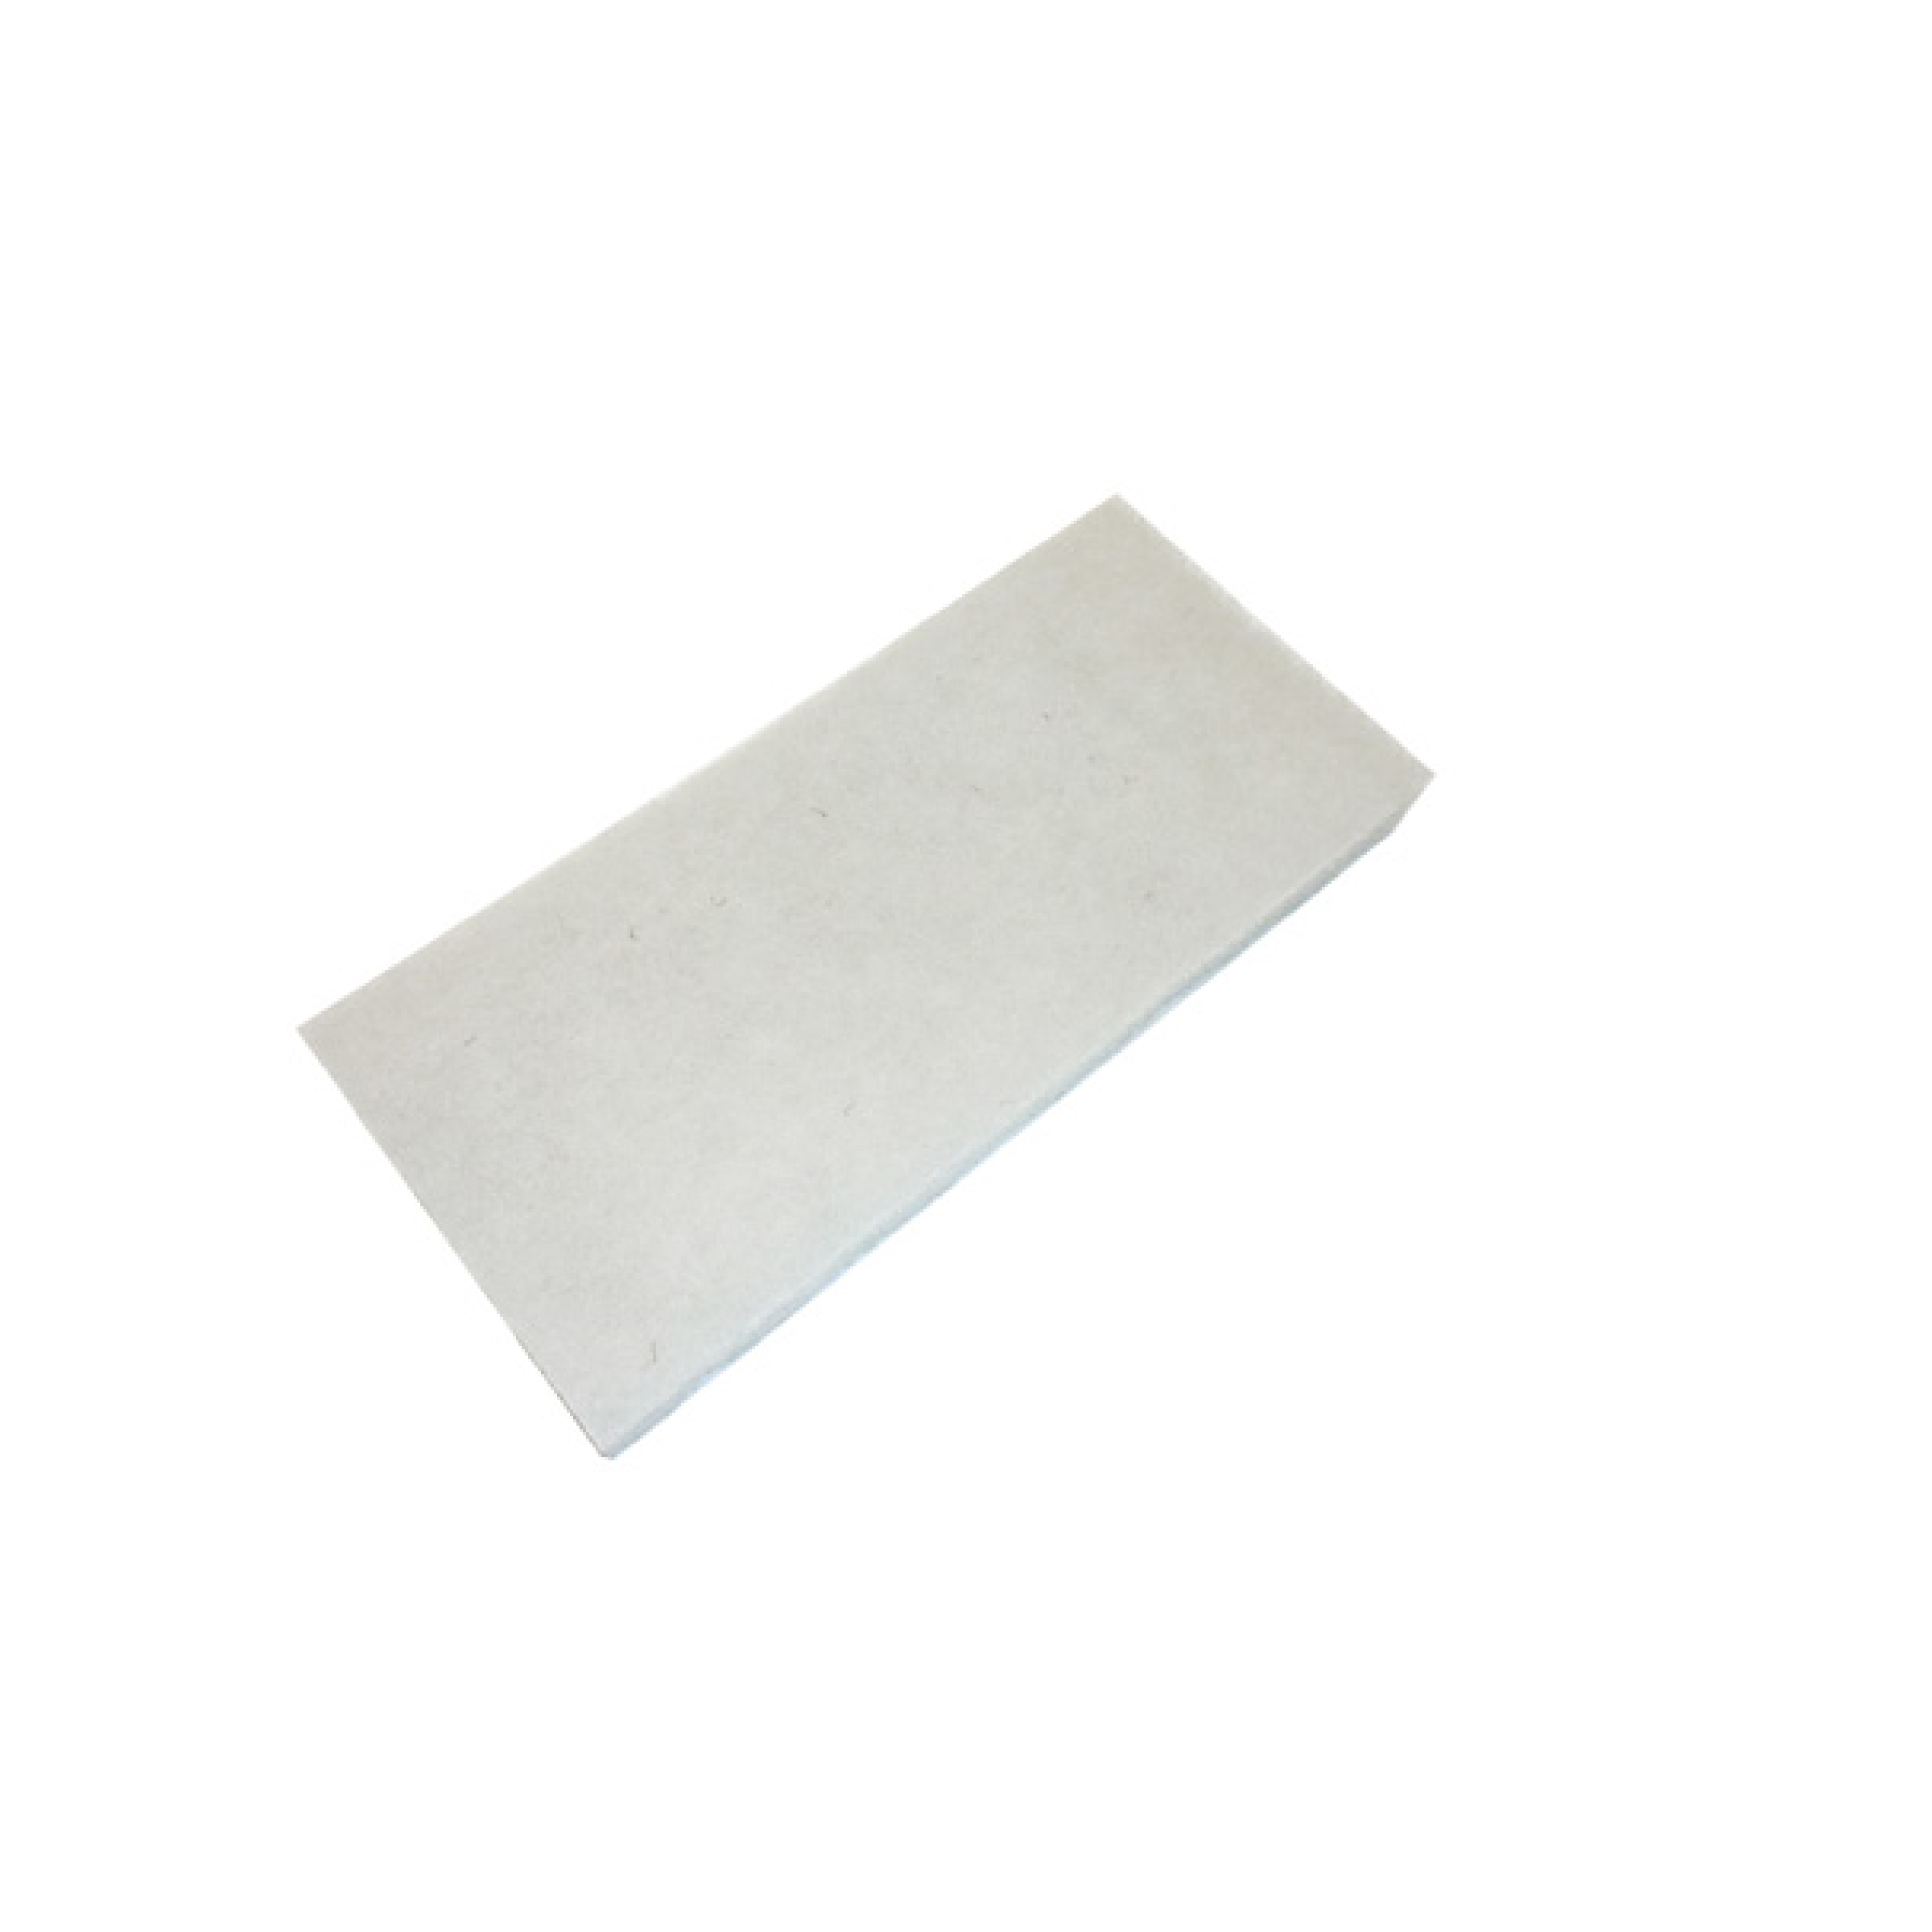 Schrubbpad, weiß, 25 cm Abrasives Schrubbpad zum Entfernen grober Verschmutzung